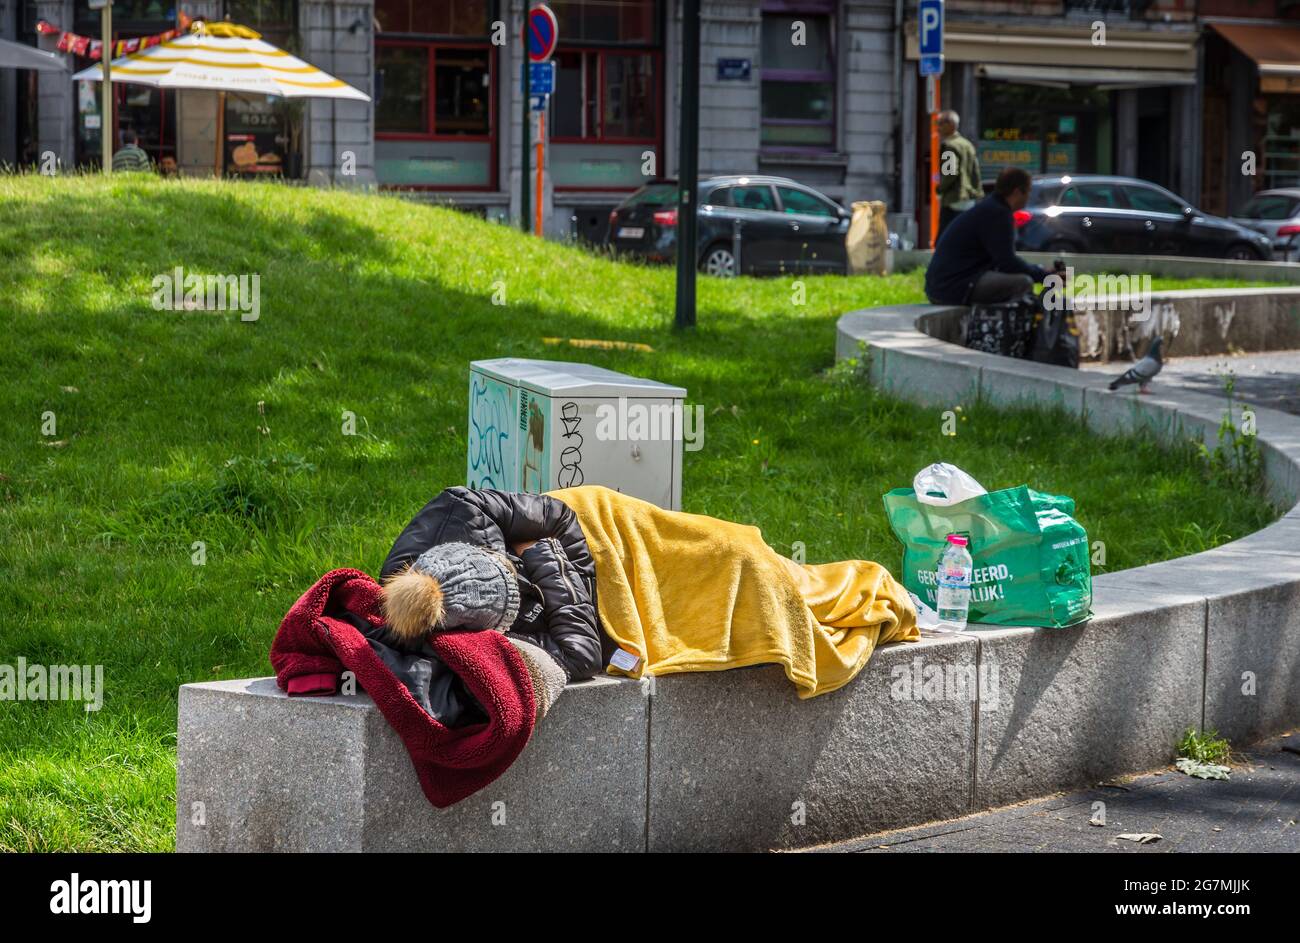 Homeless woman sleeping on city centre garden wall - Saint Gilles, Brussels, Belgium. Stock Photo